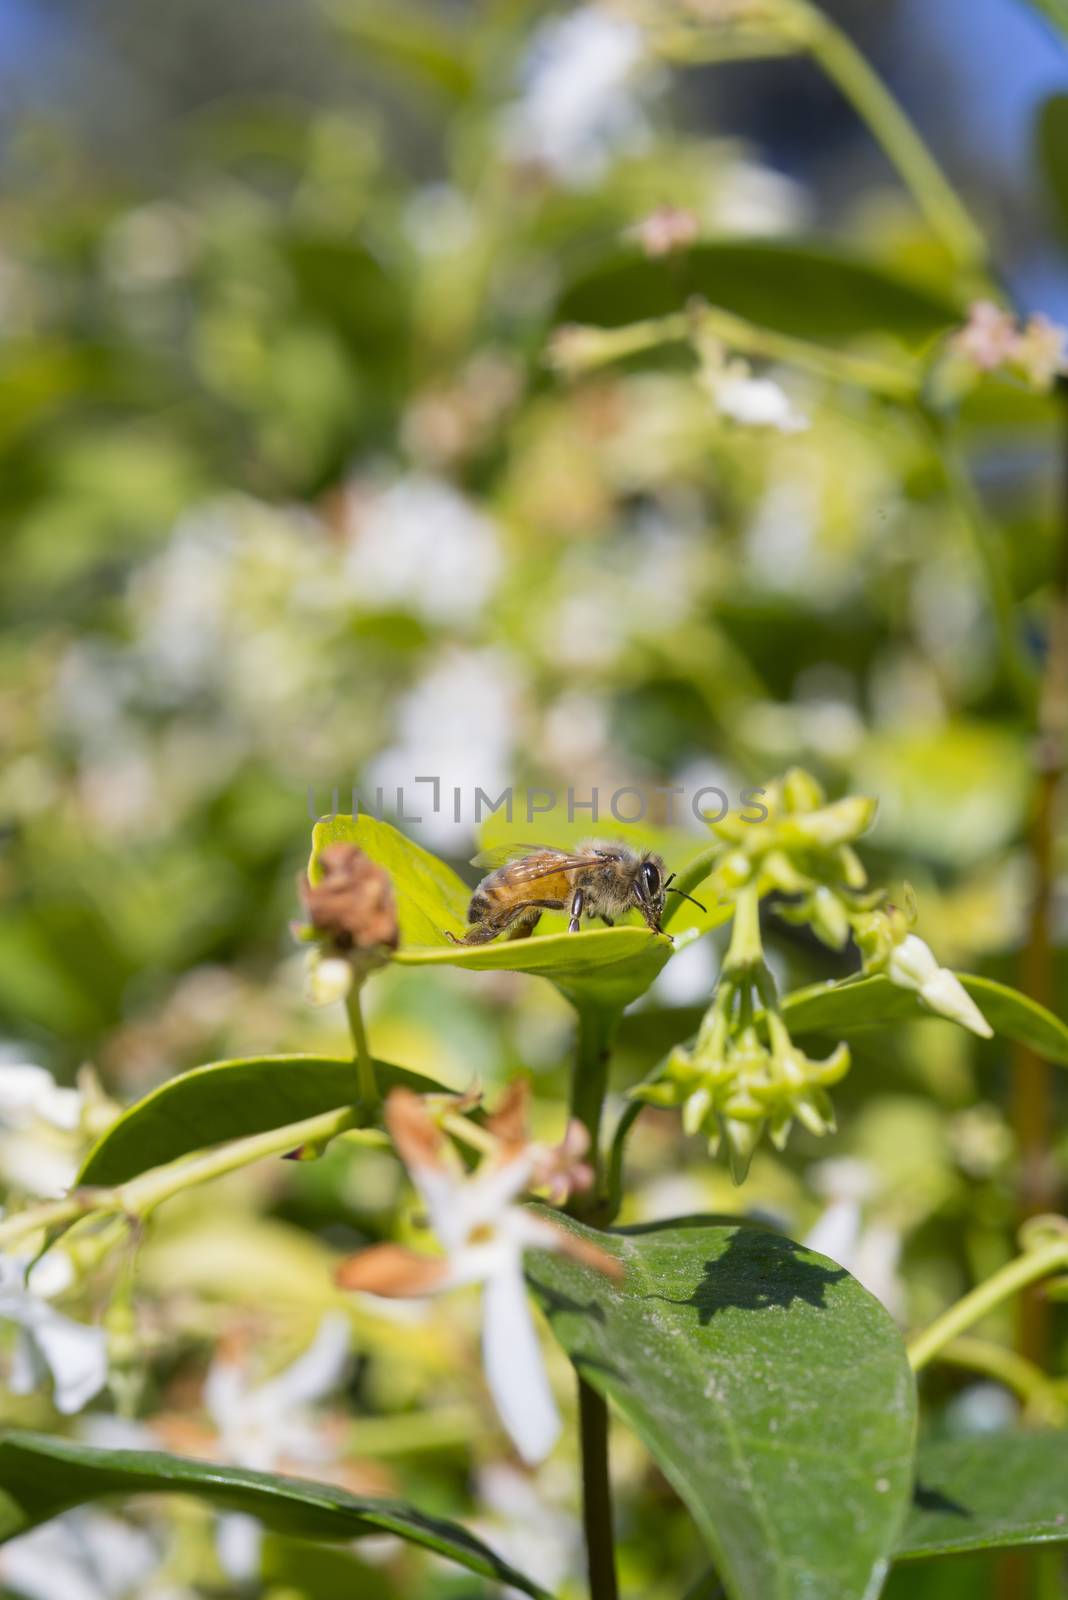 Western honey bee or European honey bee (Apis mellifera) resting on leaf